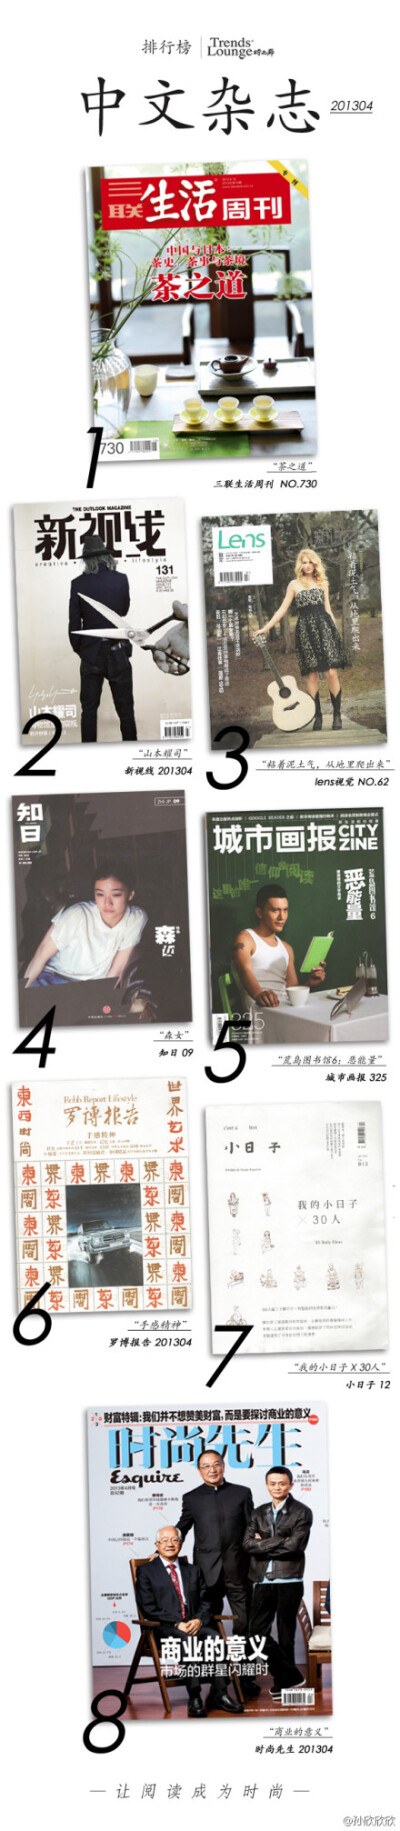 2013年4月@时尚廊 中文杂志销售排行！